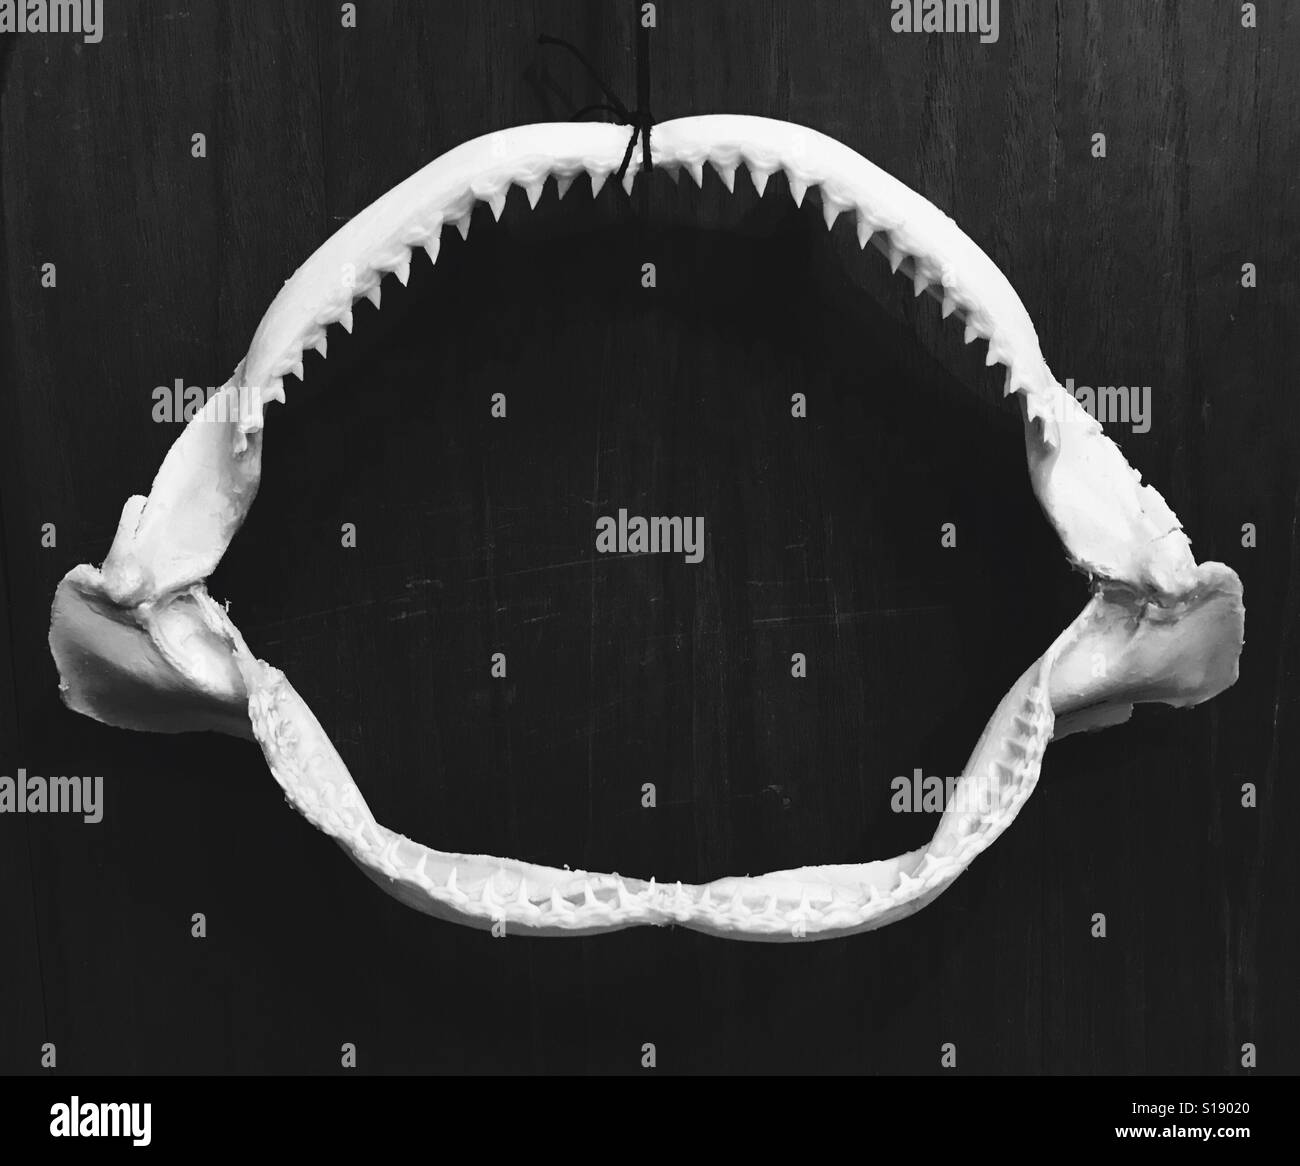 Conservato il reef shark ganascia appeso a una parete in bianco e nero. Foto Stock